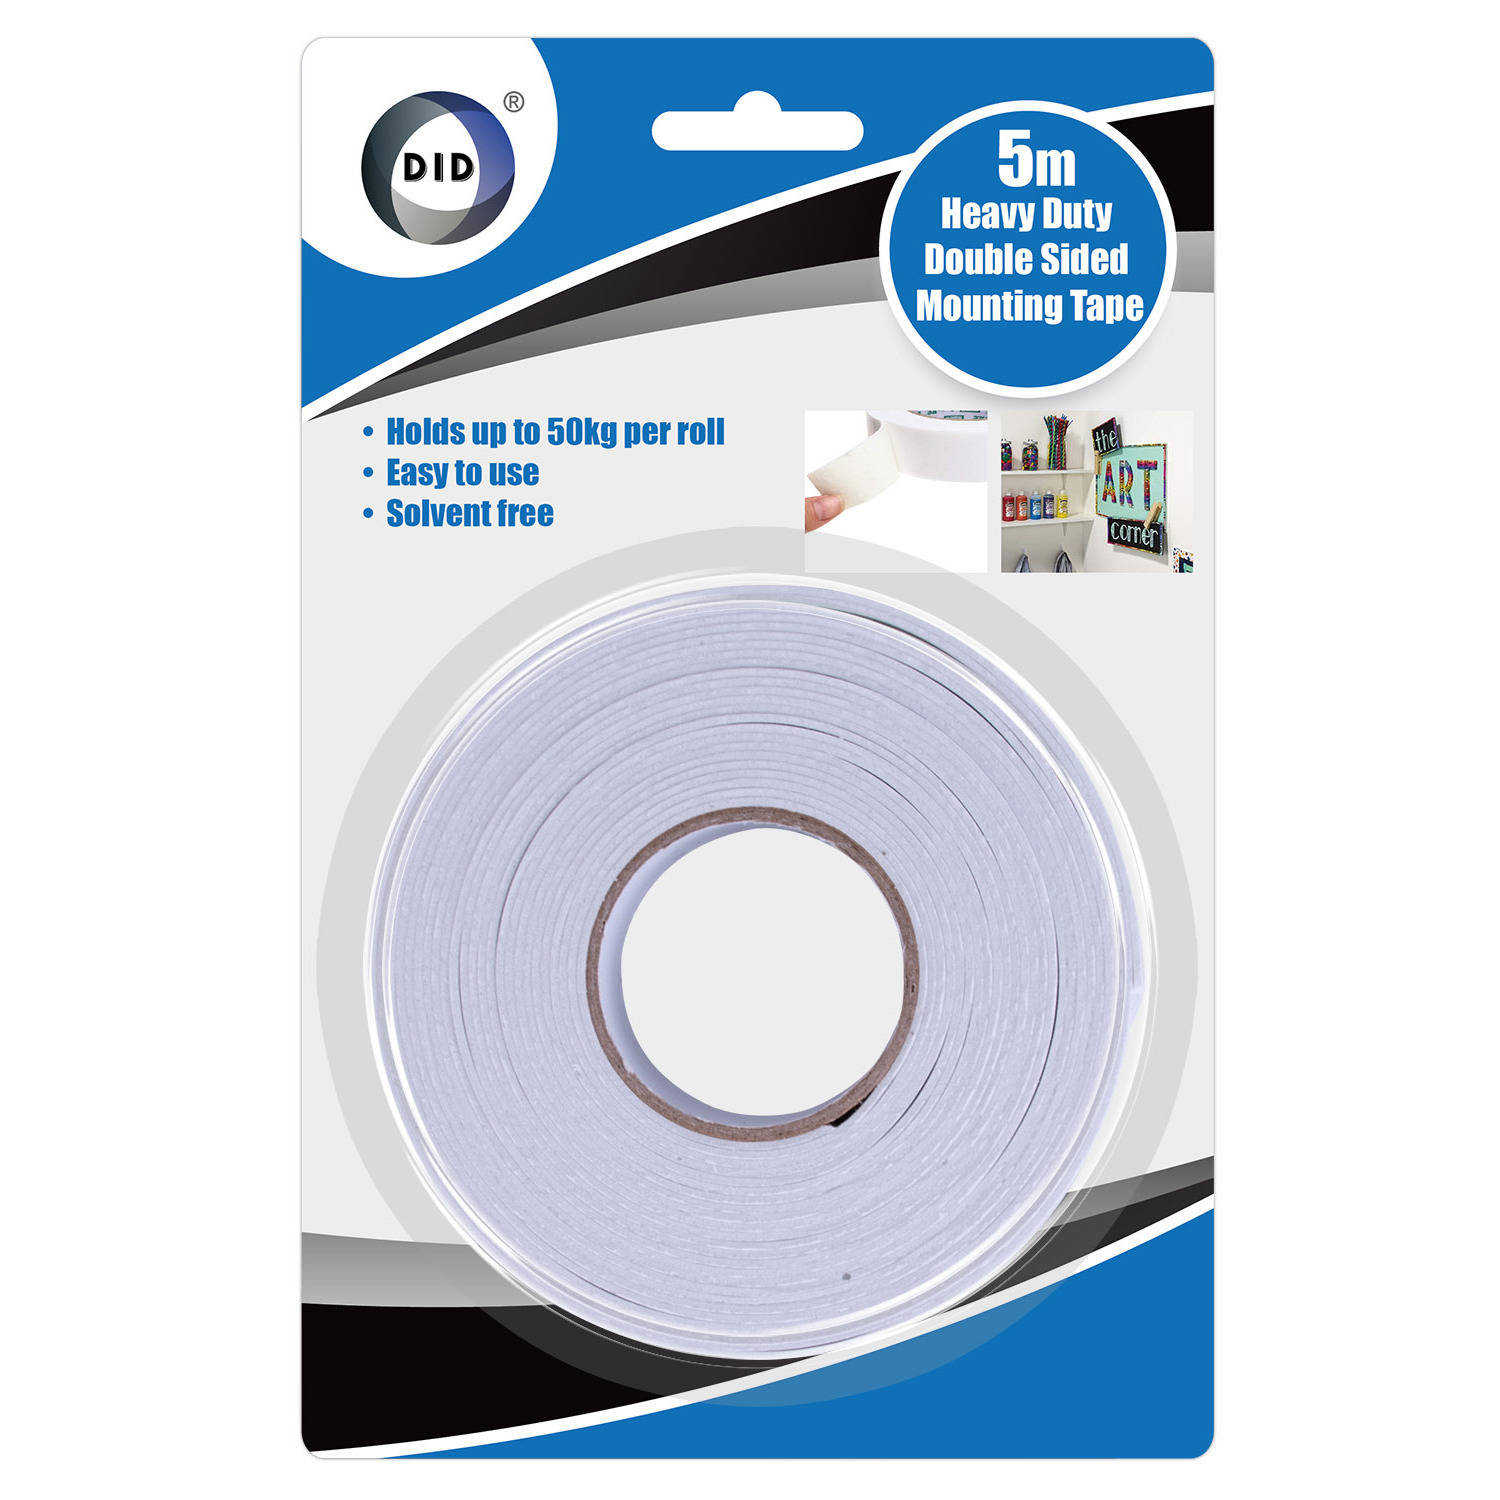 Dubbelzijdig foam tape-plakband 5 meter Tape (klussen)